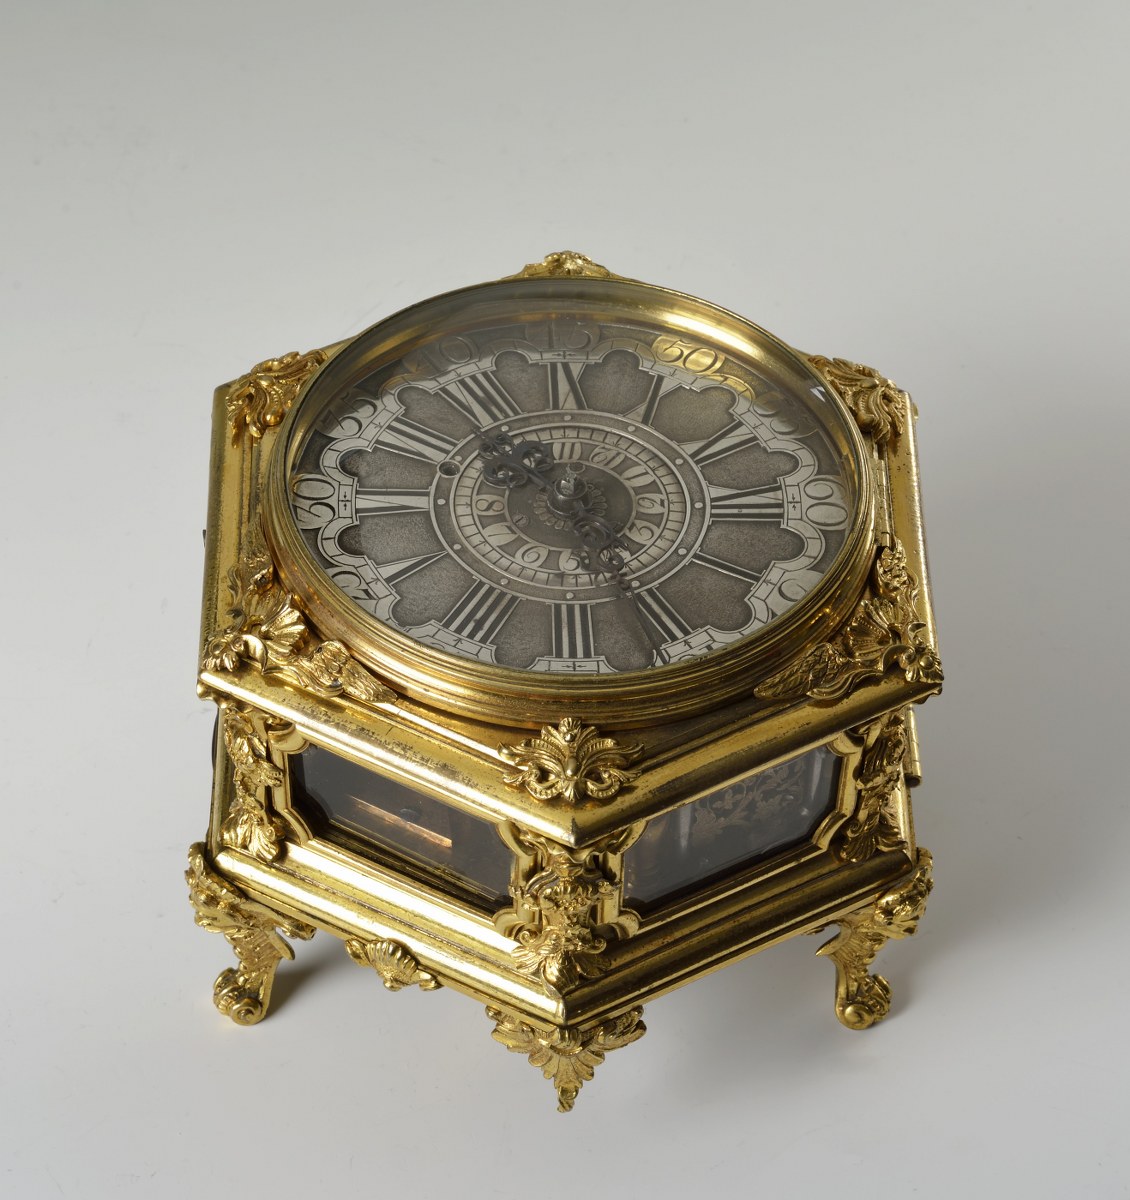 Johann Heinrich Naumann: Stolní horizontální hodiny / 1730 mosazné zlacené pouzdro / 14 x 17 cm cena: 806 000 Kč / Arthouse Hejtmánek 22. 5. 2014